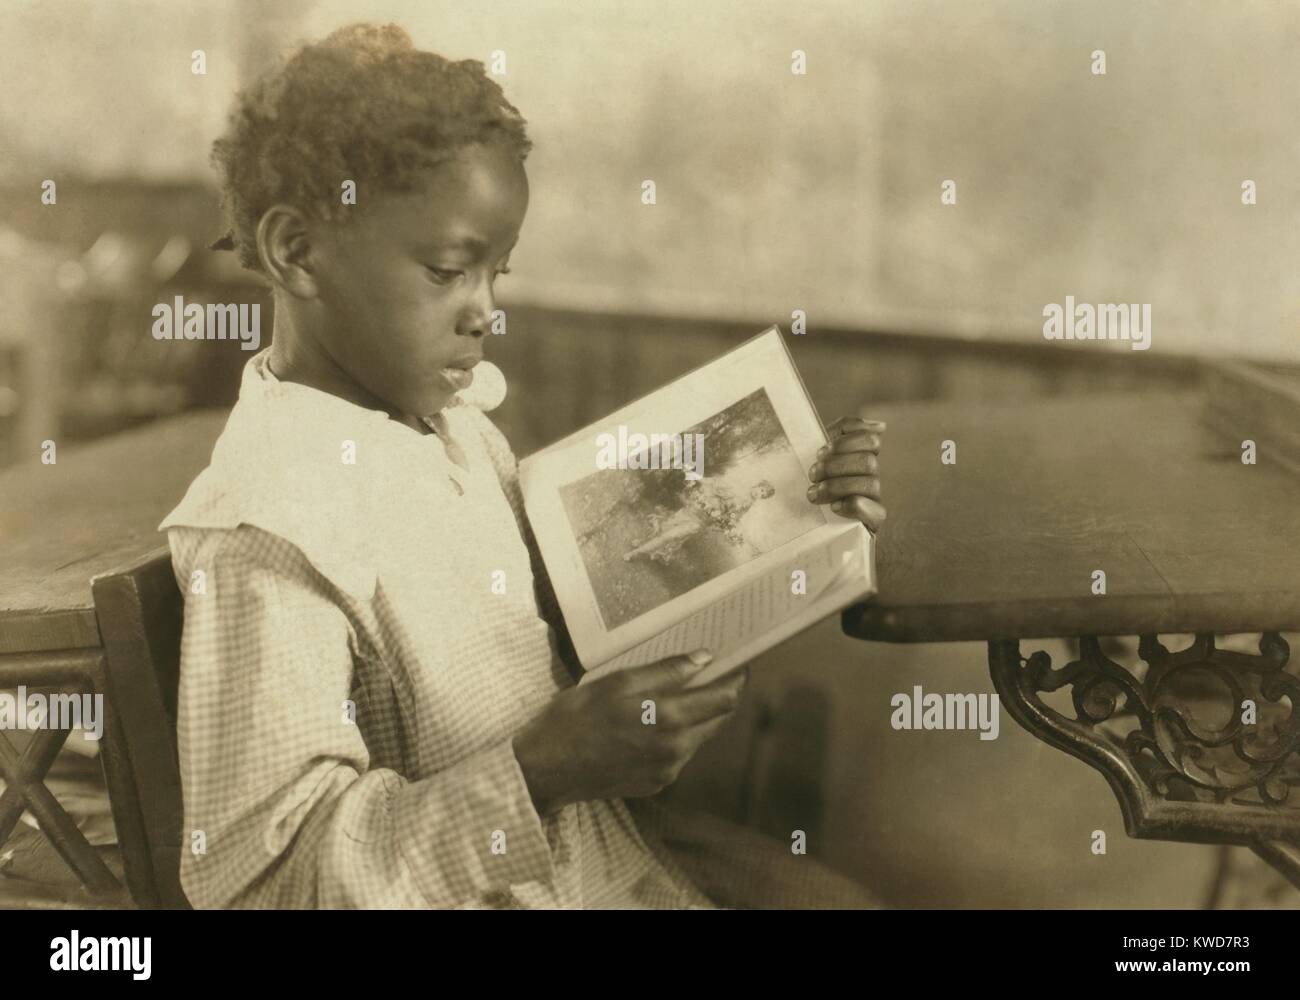 Junge Mädchen lesen ein Bildband in angenehmen grünen Schule in der Nähe von Marlinton, West Virginia. Die 1-zimmer Schule war eine der besten Schulen für afrikanische Amerikaner in Pocahontas County. Okt. 1921. Foto von Lewis Hine. (BSLOC 2015 16 131) Stockfoto